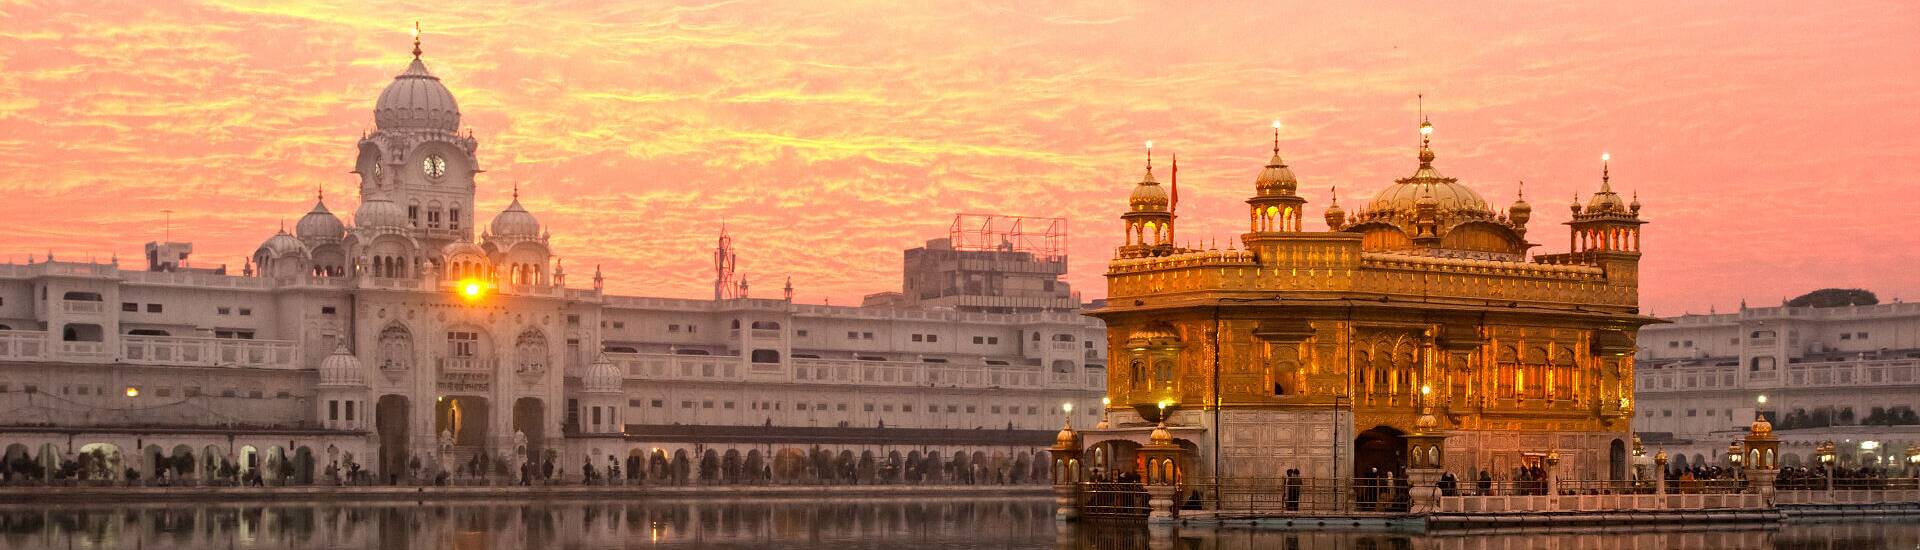 Bild des beeindruckenden Harmandir Sahib, der Goldenen Tempels in Amritsar, Indien